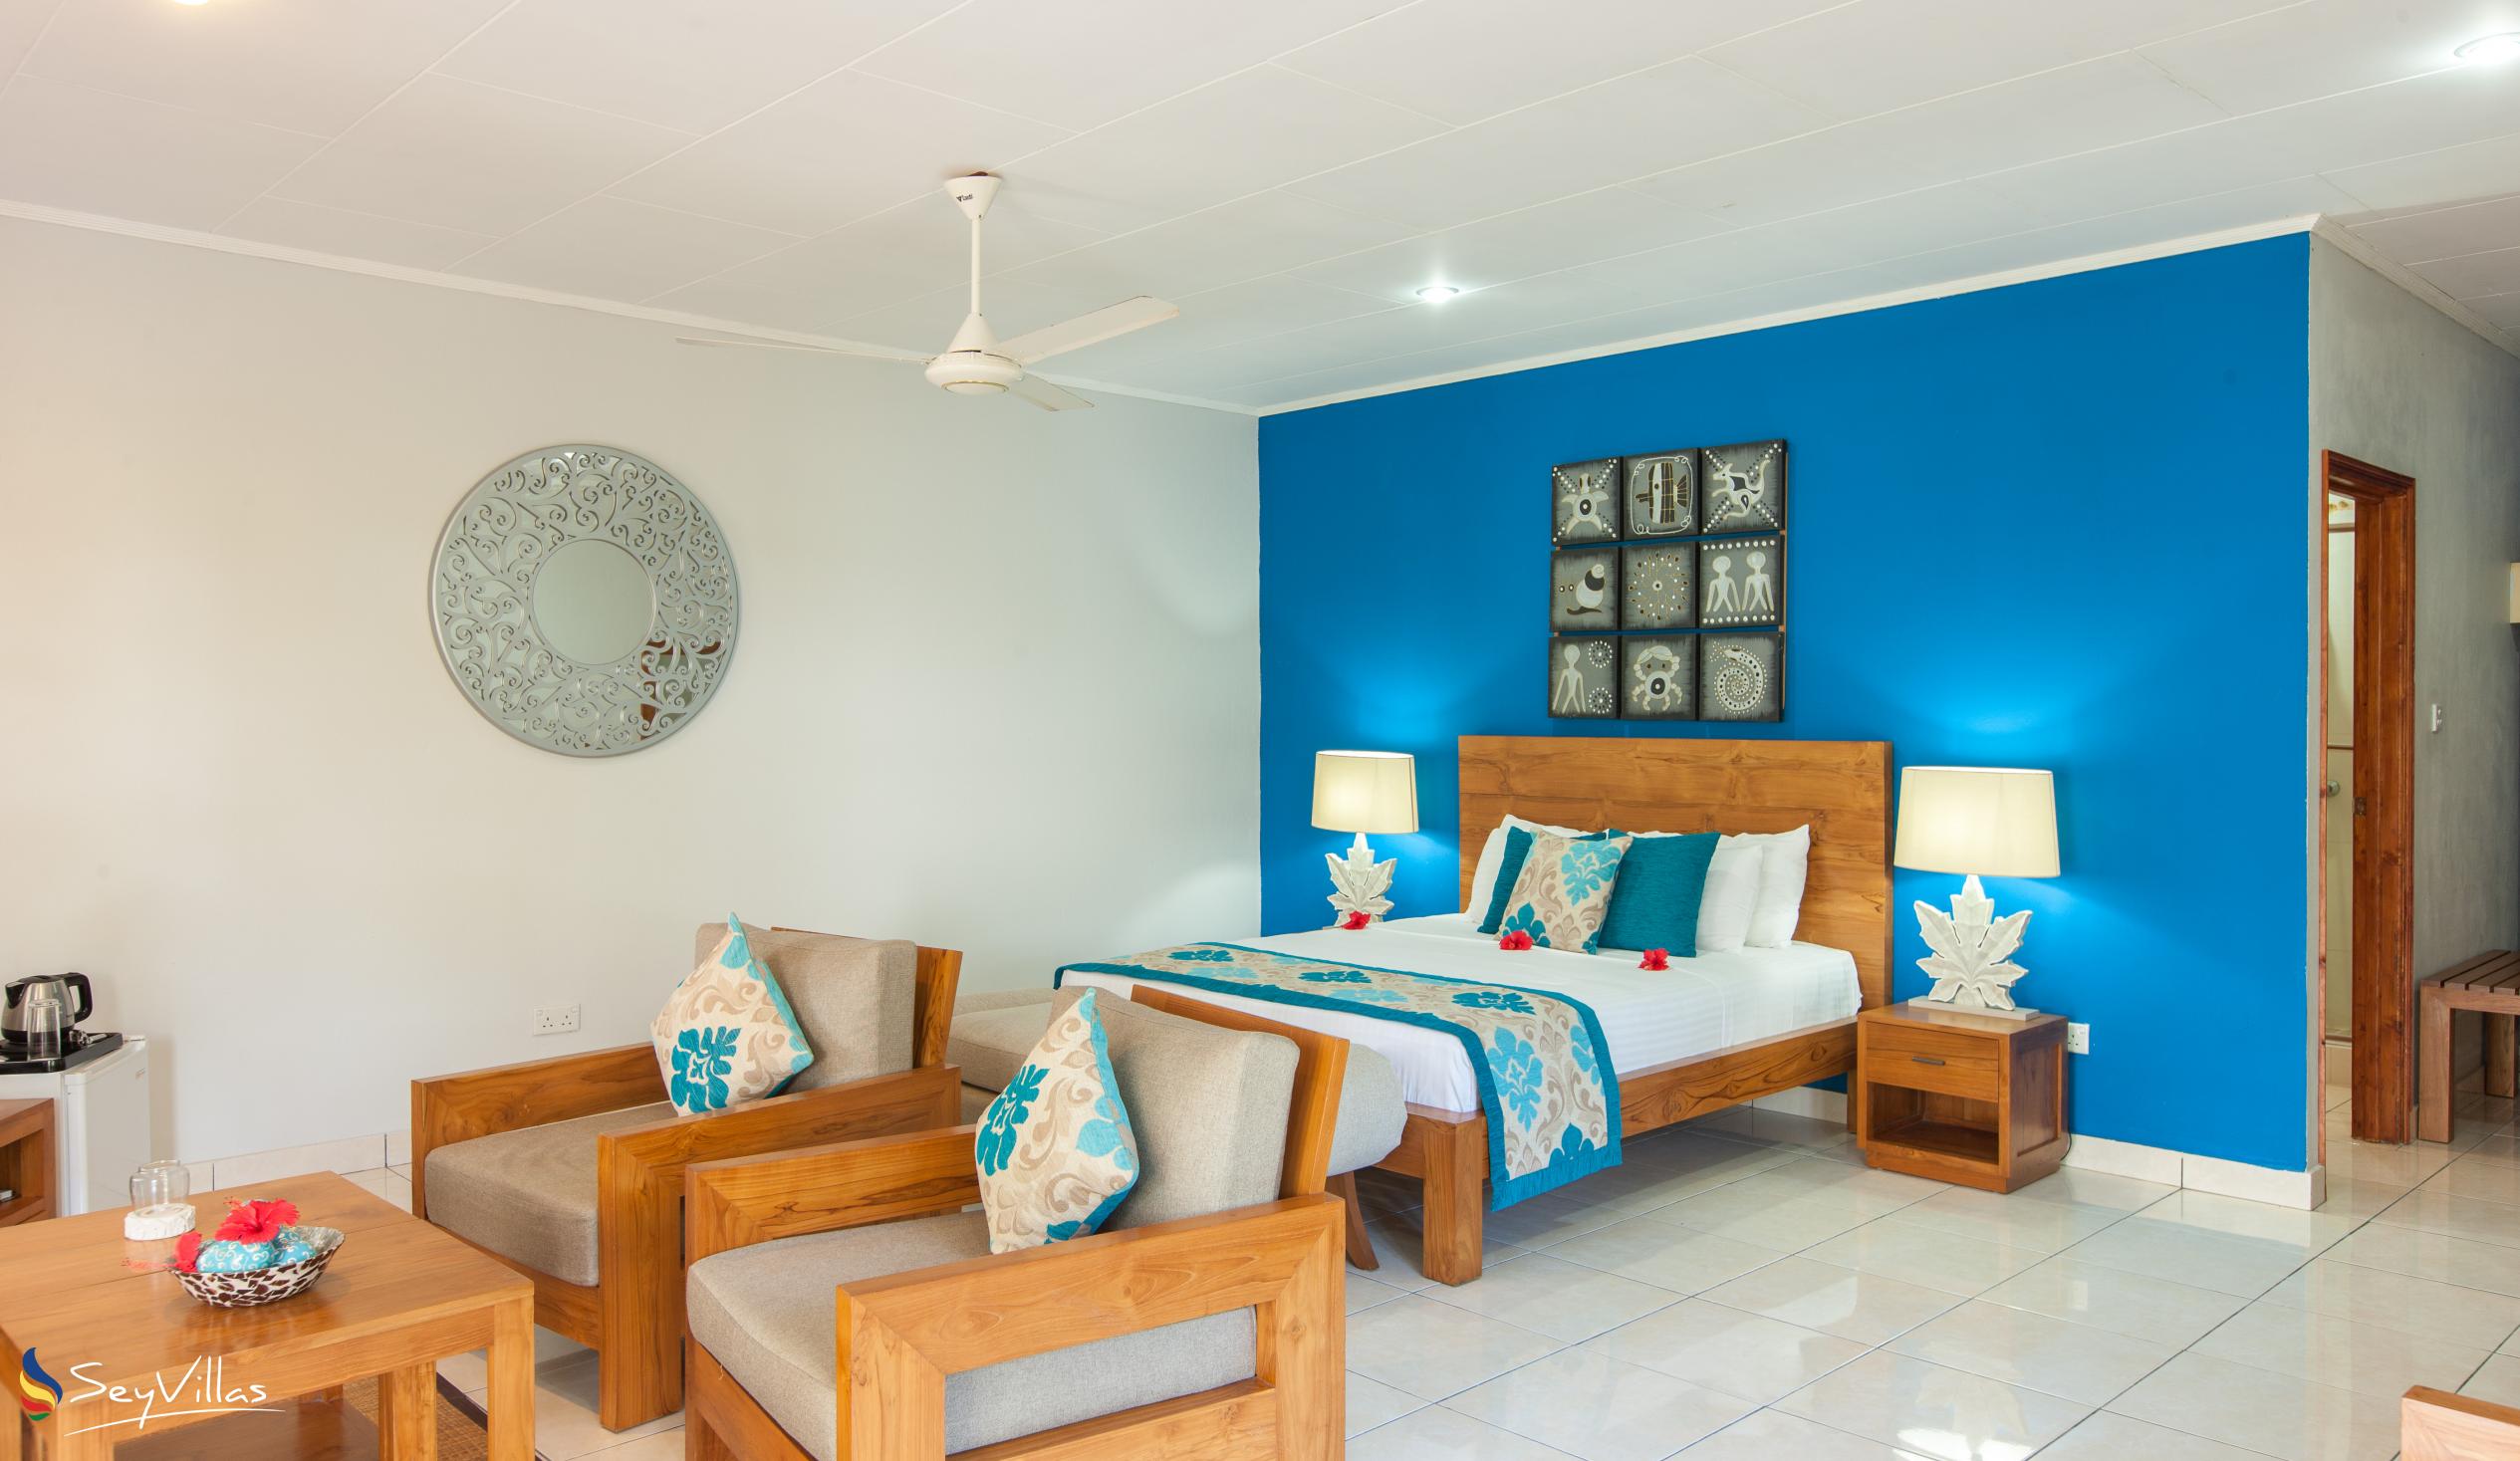 Photo 37: Villas de Mer - Junior Suite - Praslin (Seychelles)